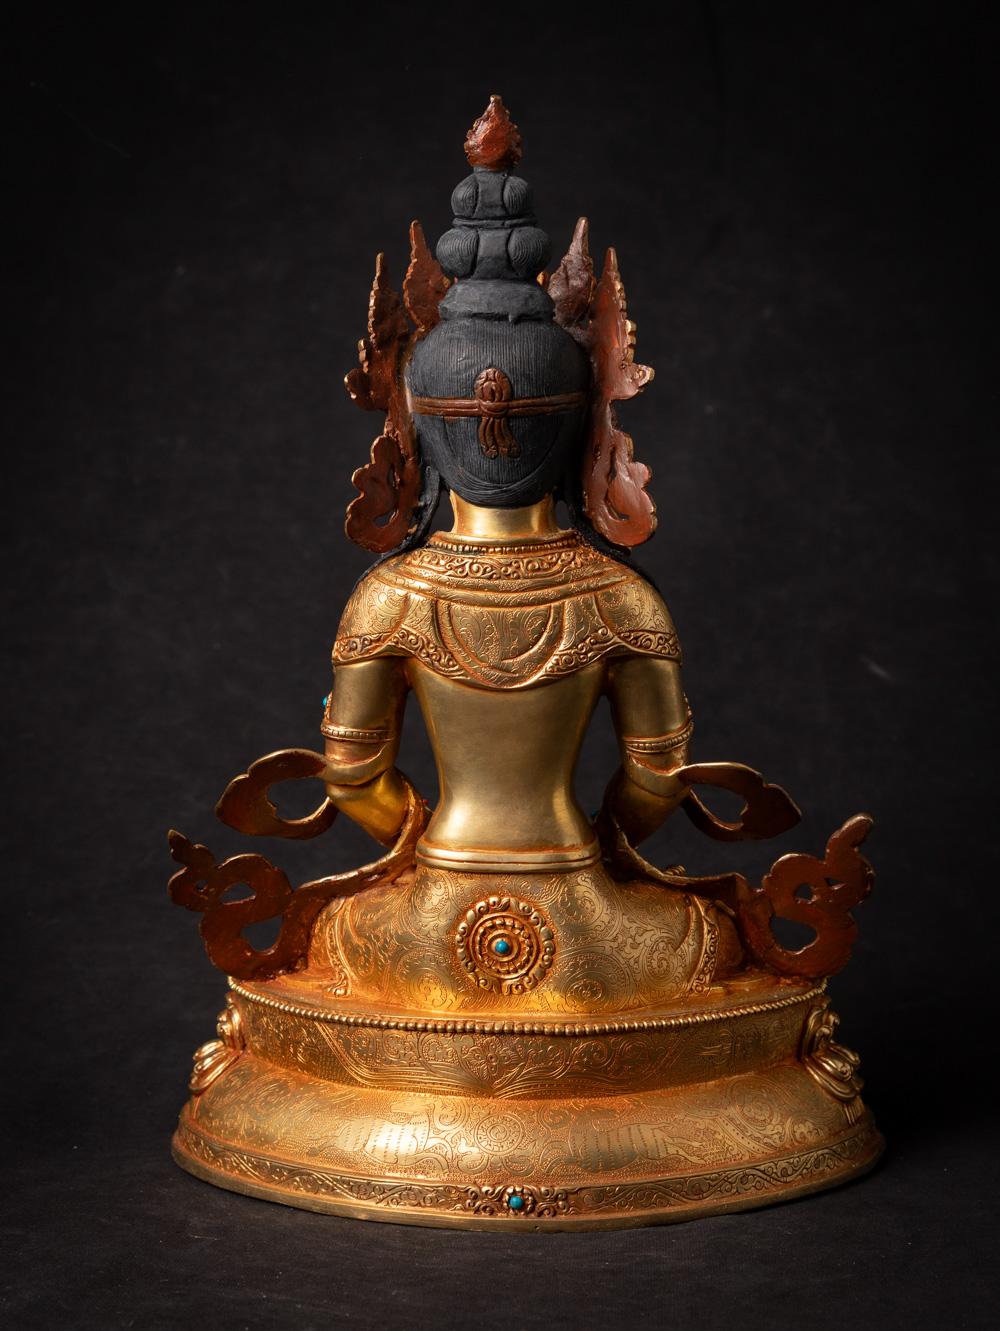 MATERIAL : Bronze
32,6 cm hoch
23,6 cm breit und 16,2 cm tief
Feuervergoldet mit 24 krt. Gold - das Gesicht ist goldbemalt
Dhyana Mudra
Neu hergestellt in höchster Qualität !
Gewicht: 3,6 kg
Mit Ursprung in Nepal
Nr: 3713-8